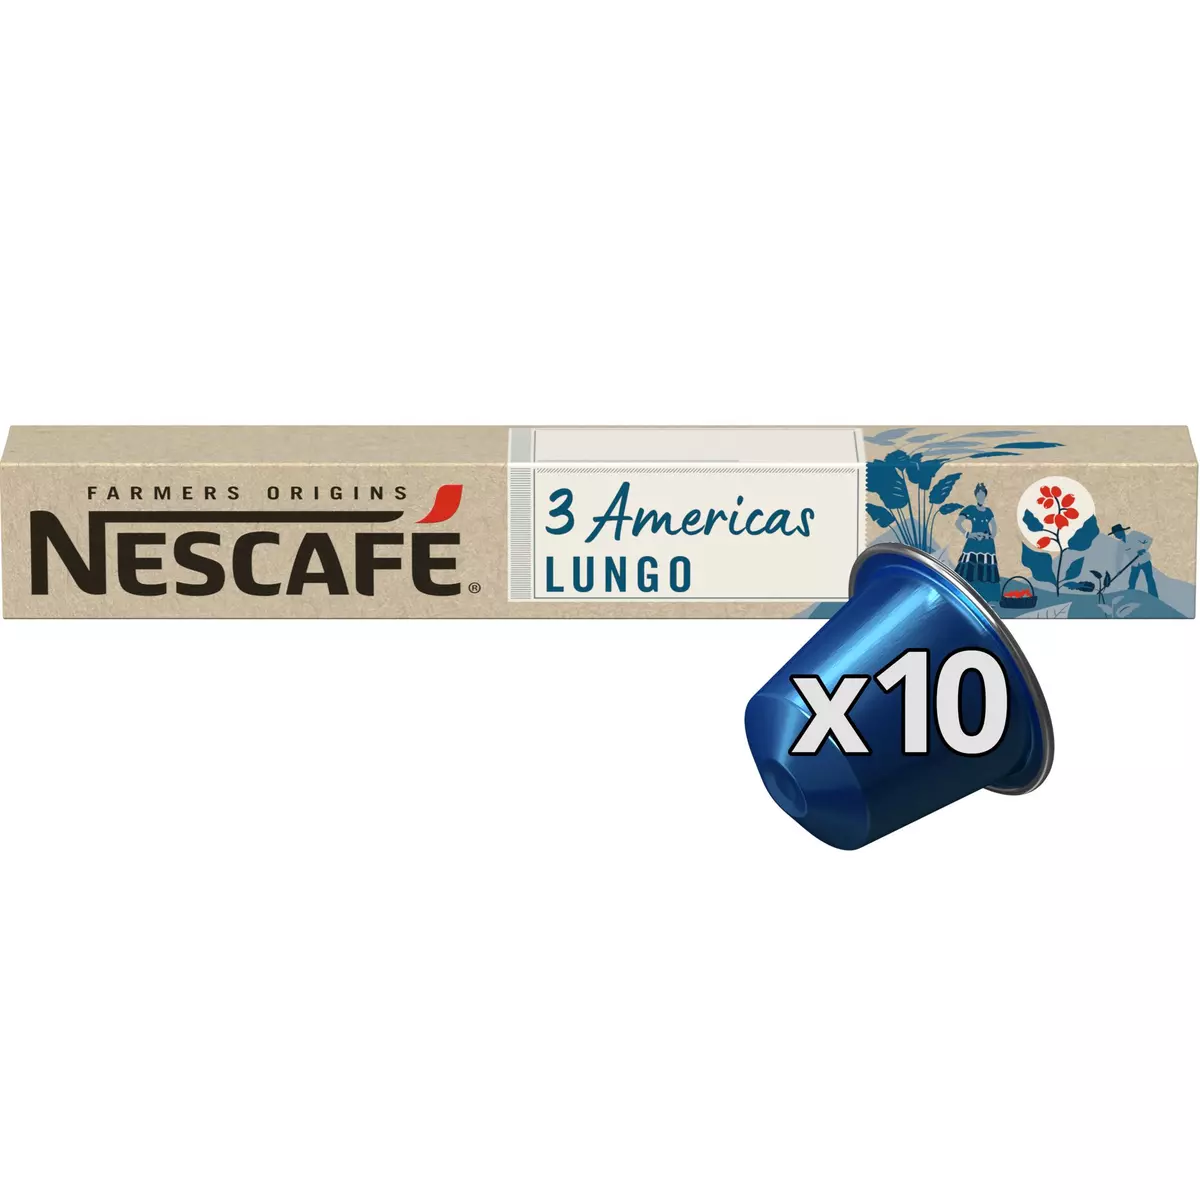 NESCAFE Farmers origins Capsules de café 3 Americas Lungo intensité 8 compatibles Nespresso 10 capsules 54g